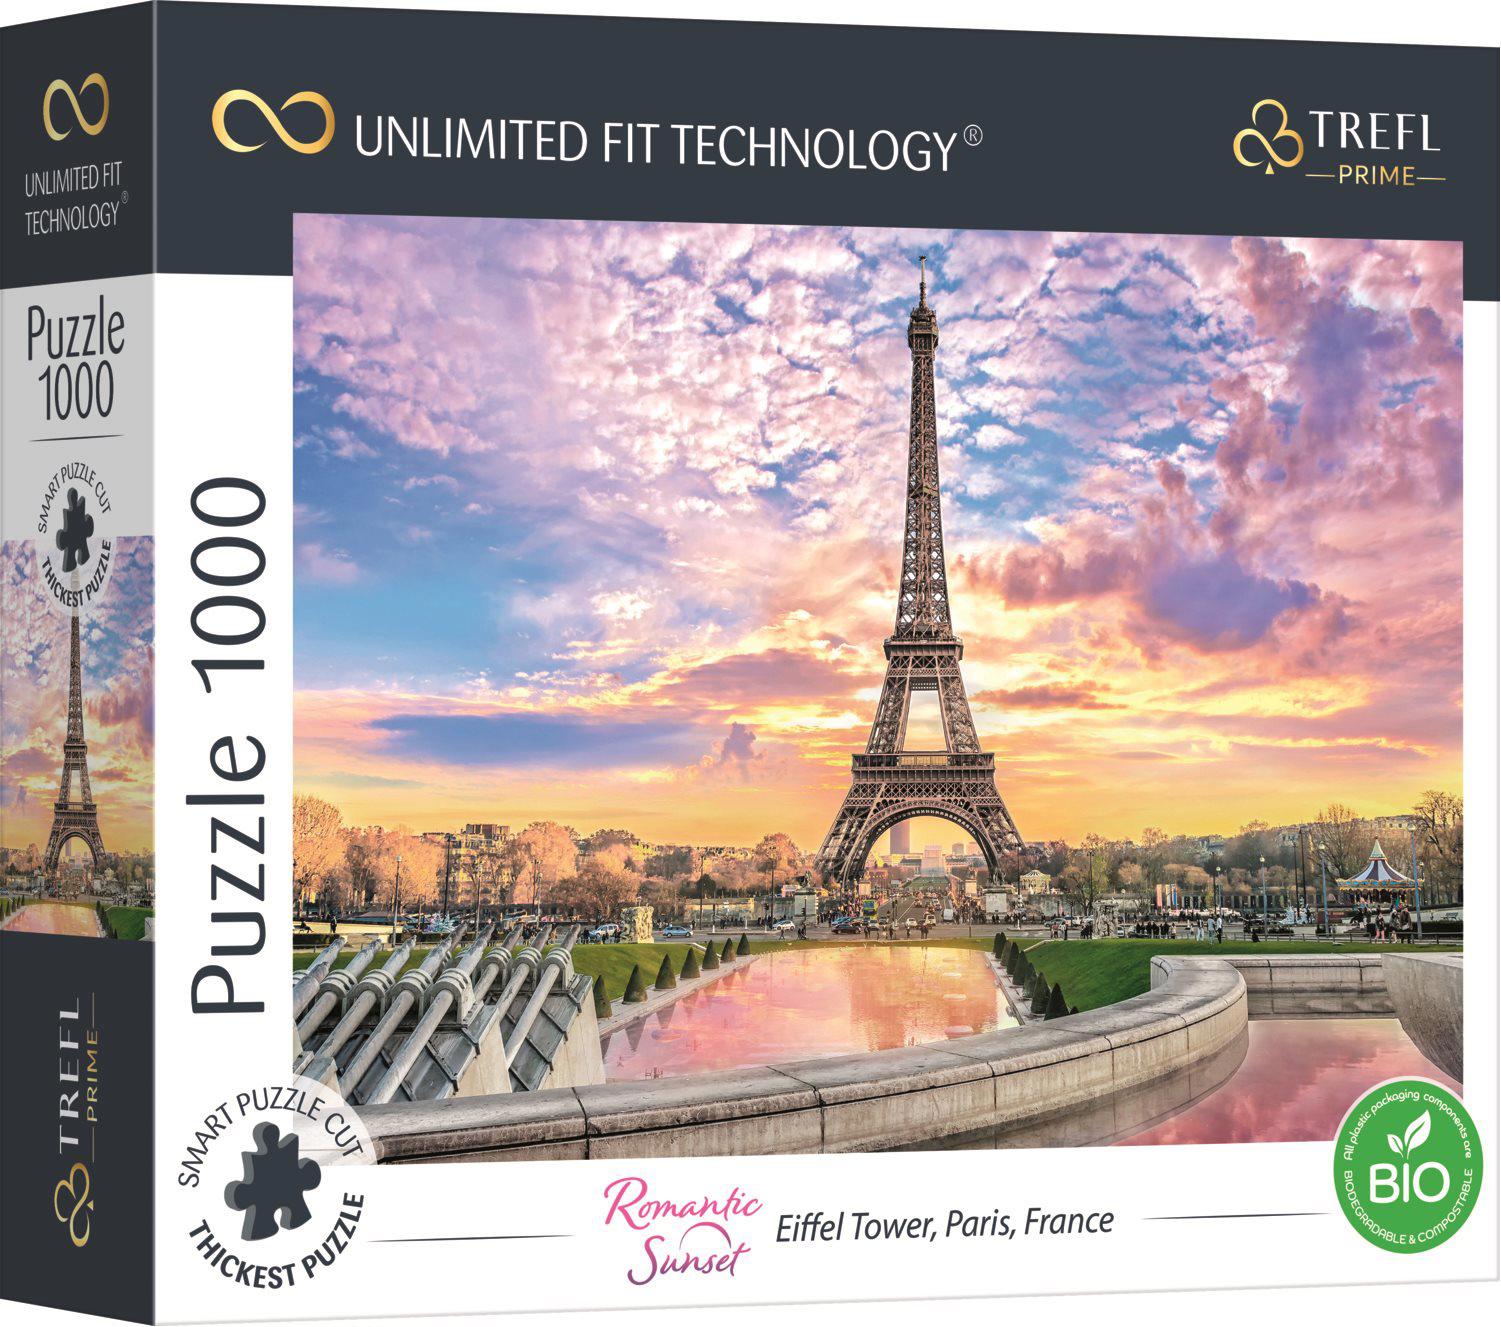 Puzzle Torre Eiffel, Paris, França UFT